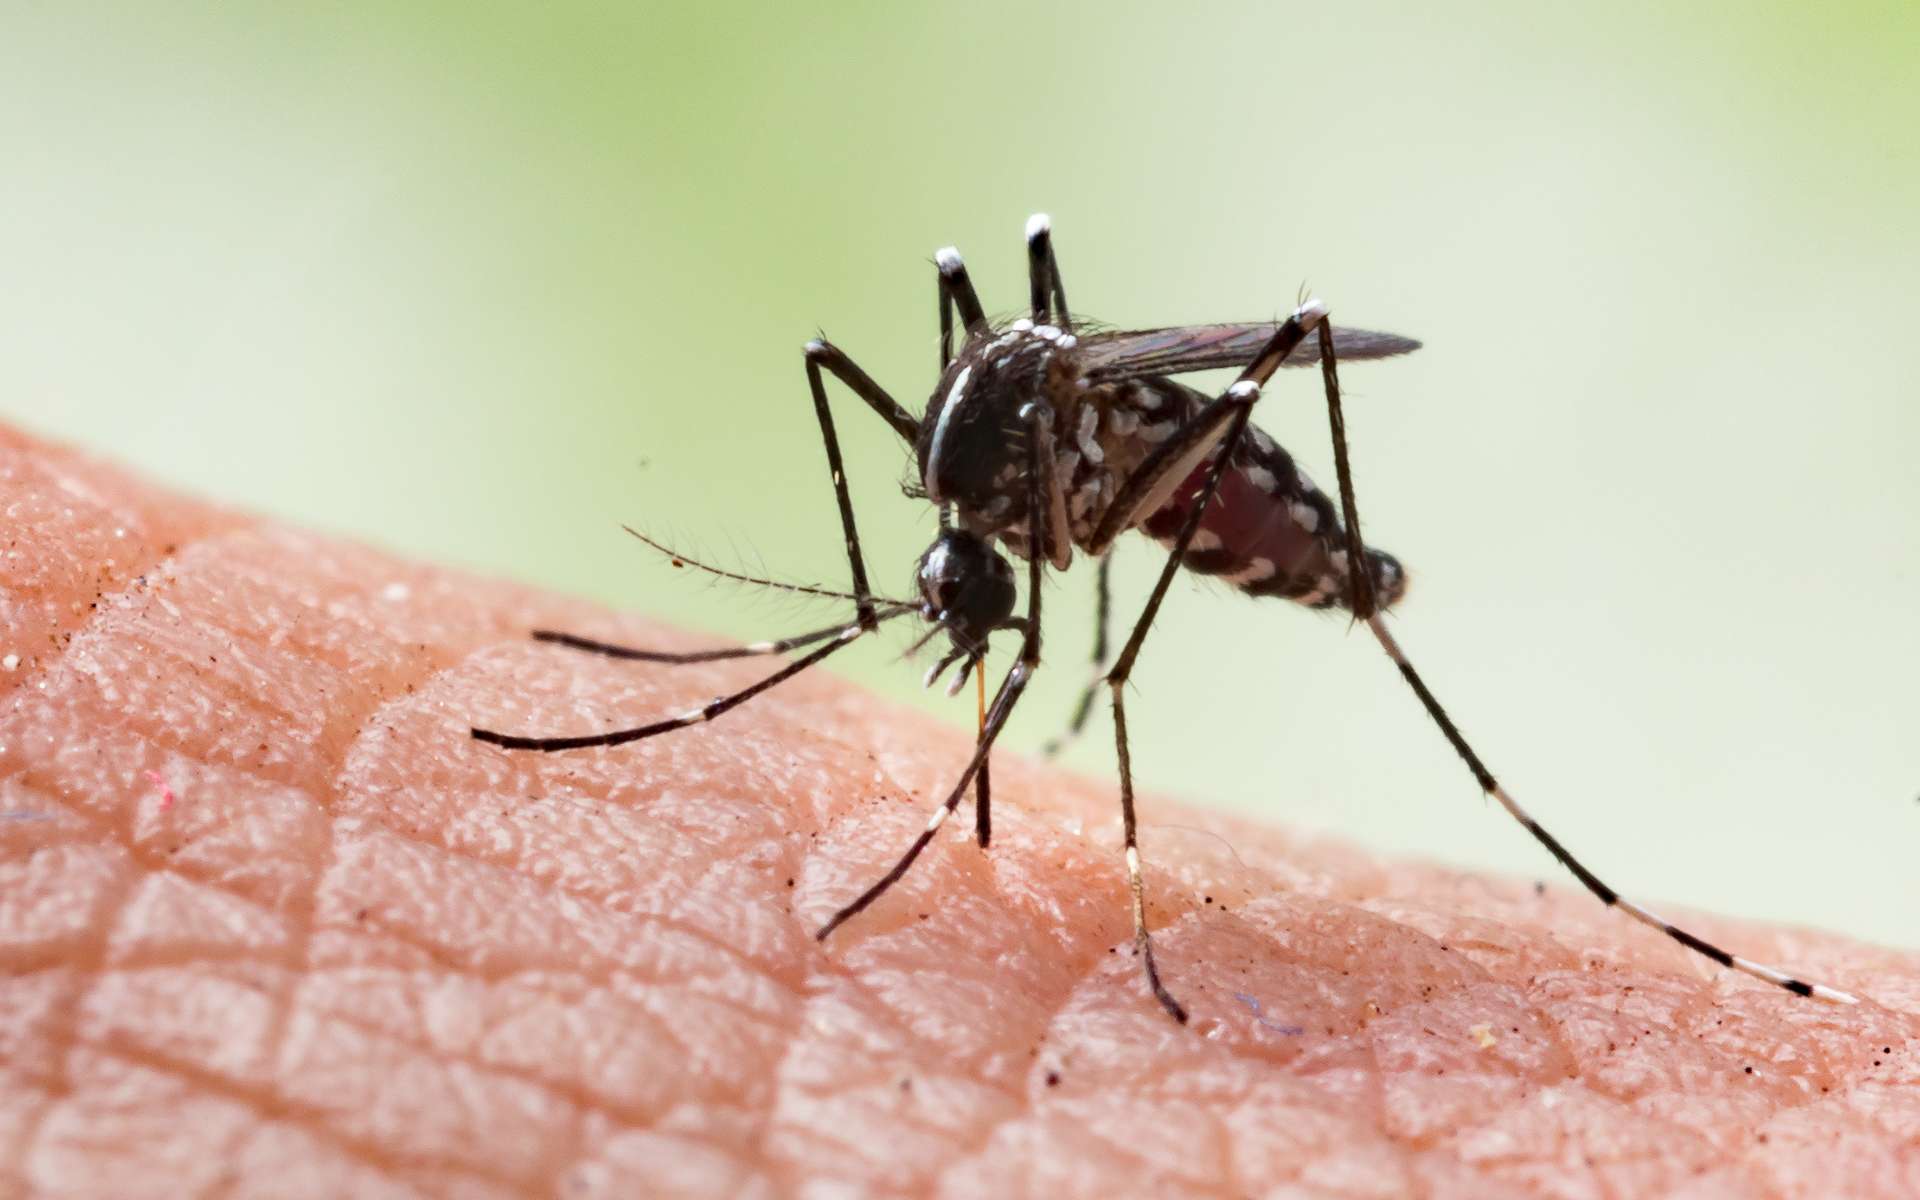 Moustique de l'espèce Aedes aegypti, vecteur commun de maladies. © frank29052515, Adobe Stock.